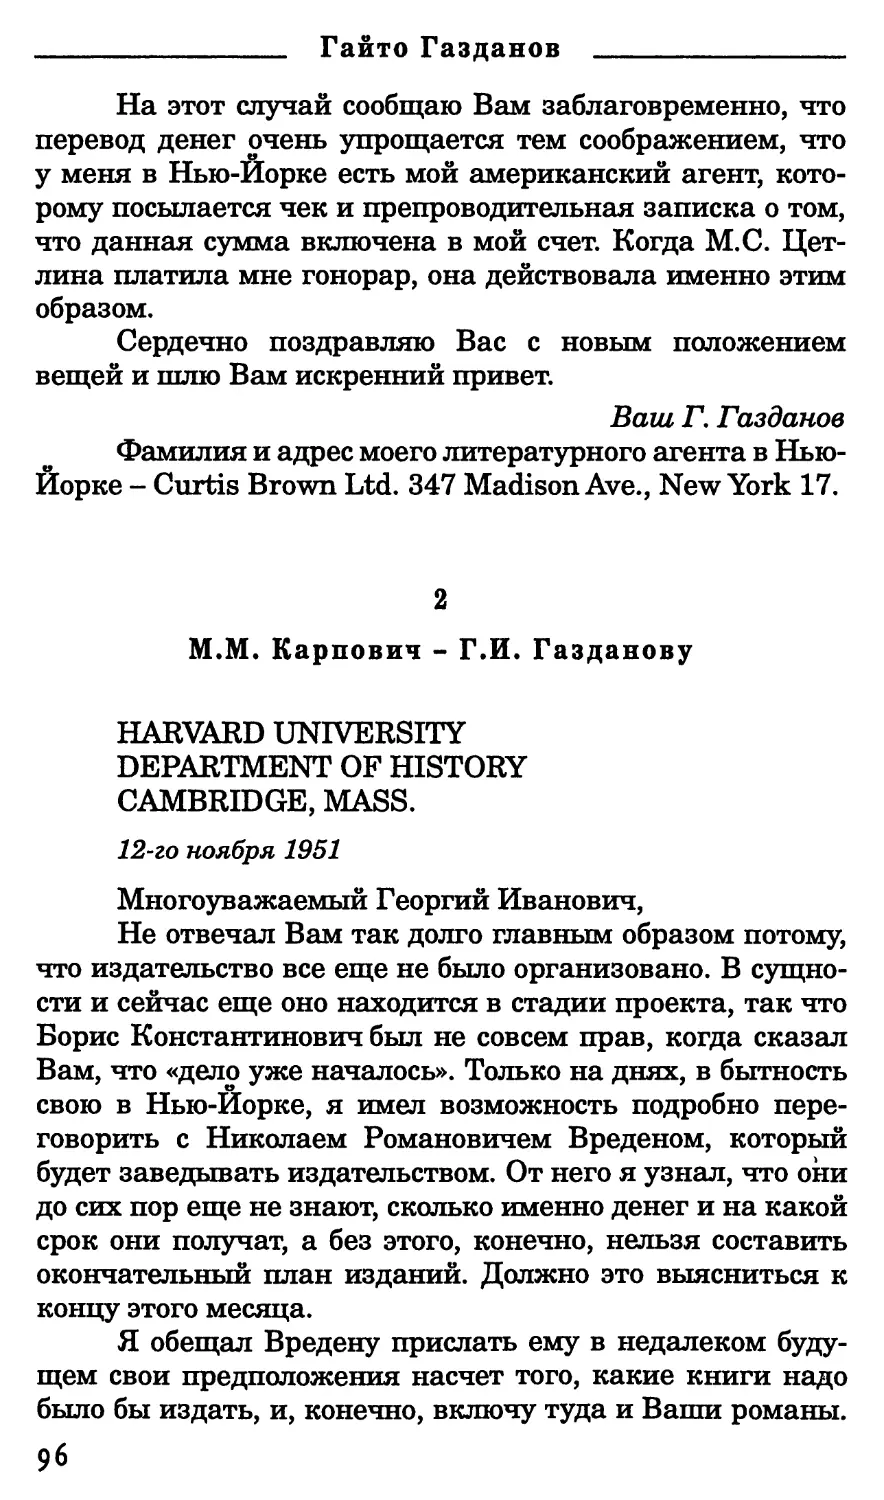 2. М.М. Карпович - Г.И Газданову. 12 ноября 1951 г.